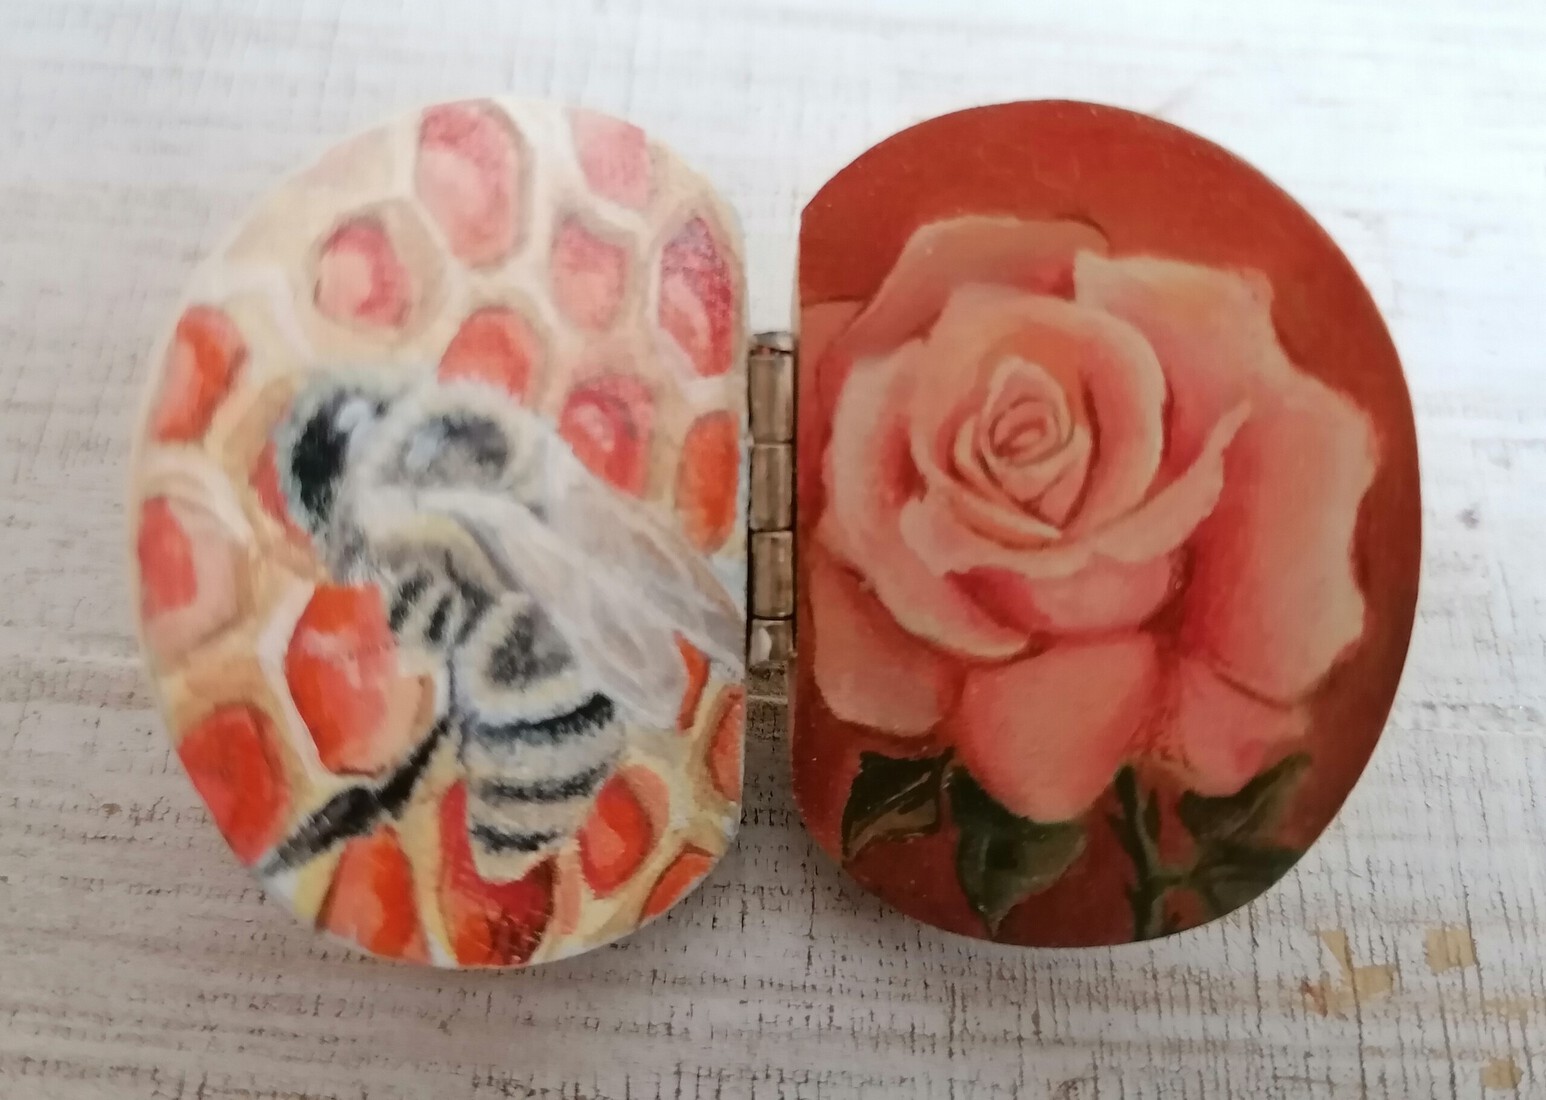 Honingbij en roos